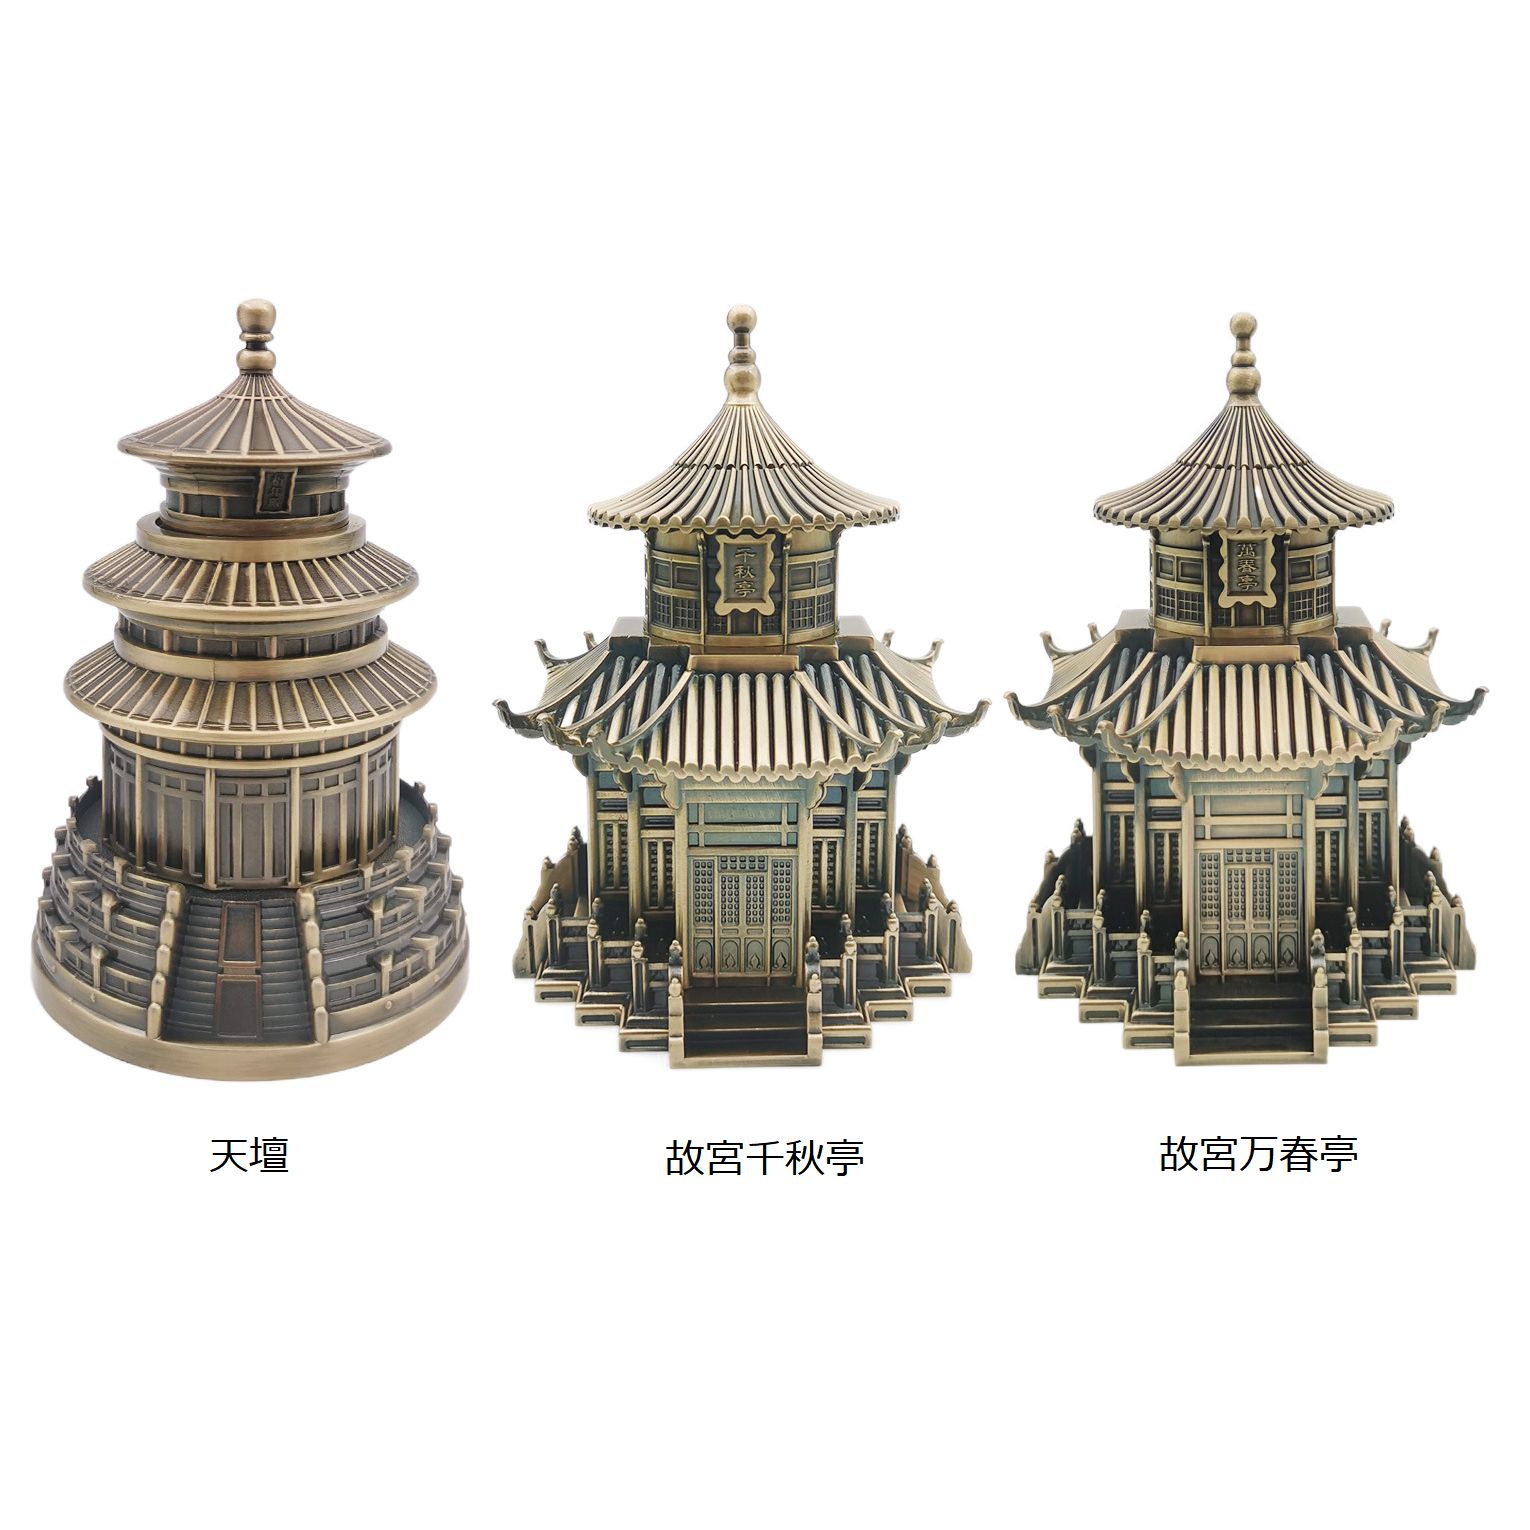 【送料無料】 爪楊枝ケース プッシュ式 歴史的建造物 中国風 金属製